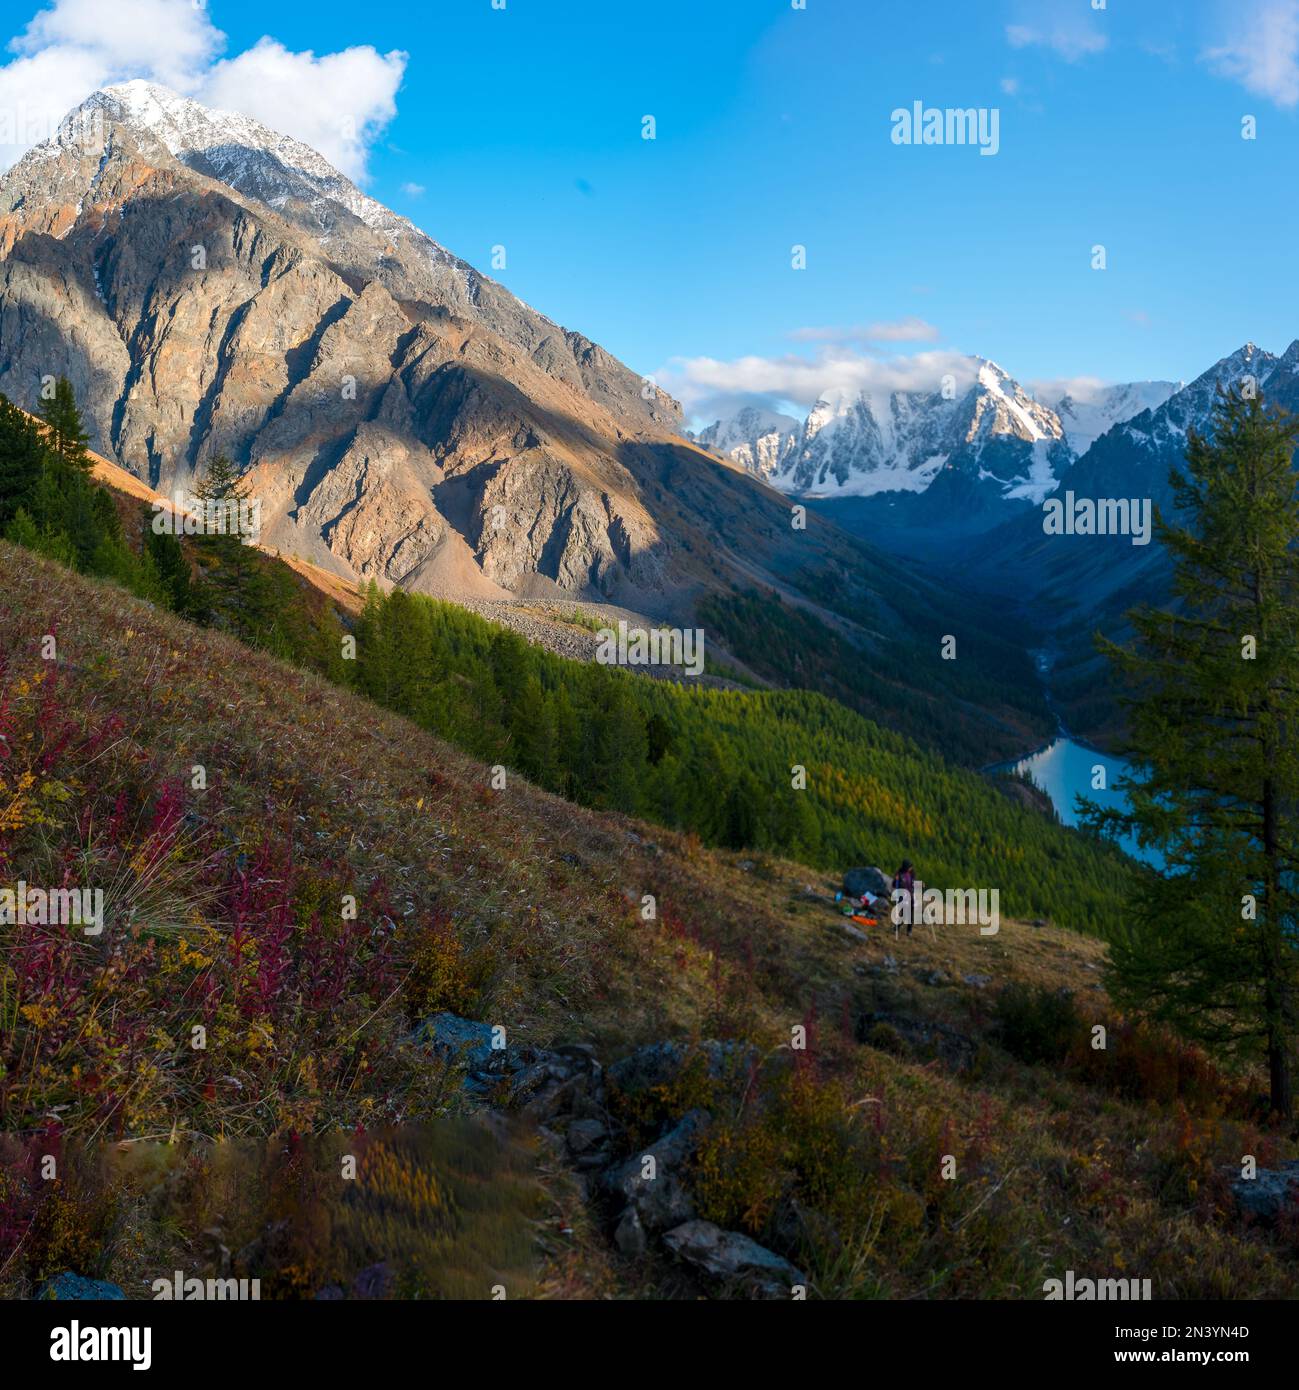 Lago alpino Shavlinskoe nella gola delle montagne all'ombra sullo sfondo dei ghiacciai con la neve in Altai con una ragazza turistica sotto di una santa Foto Stock